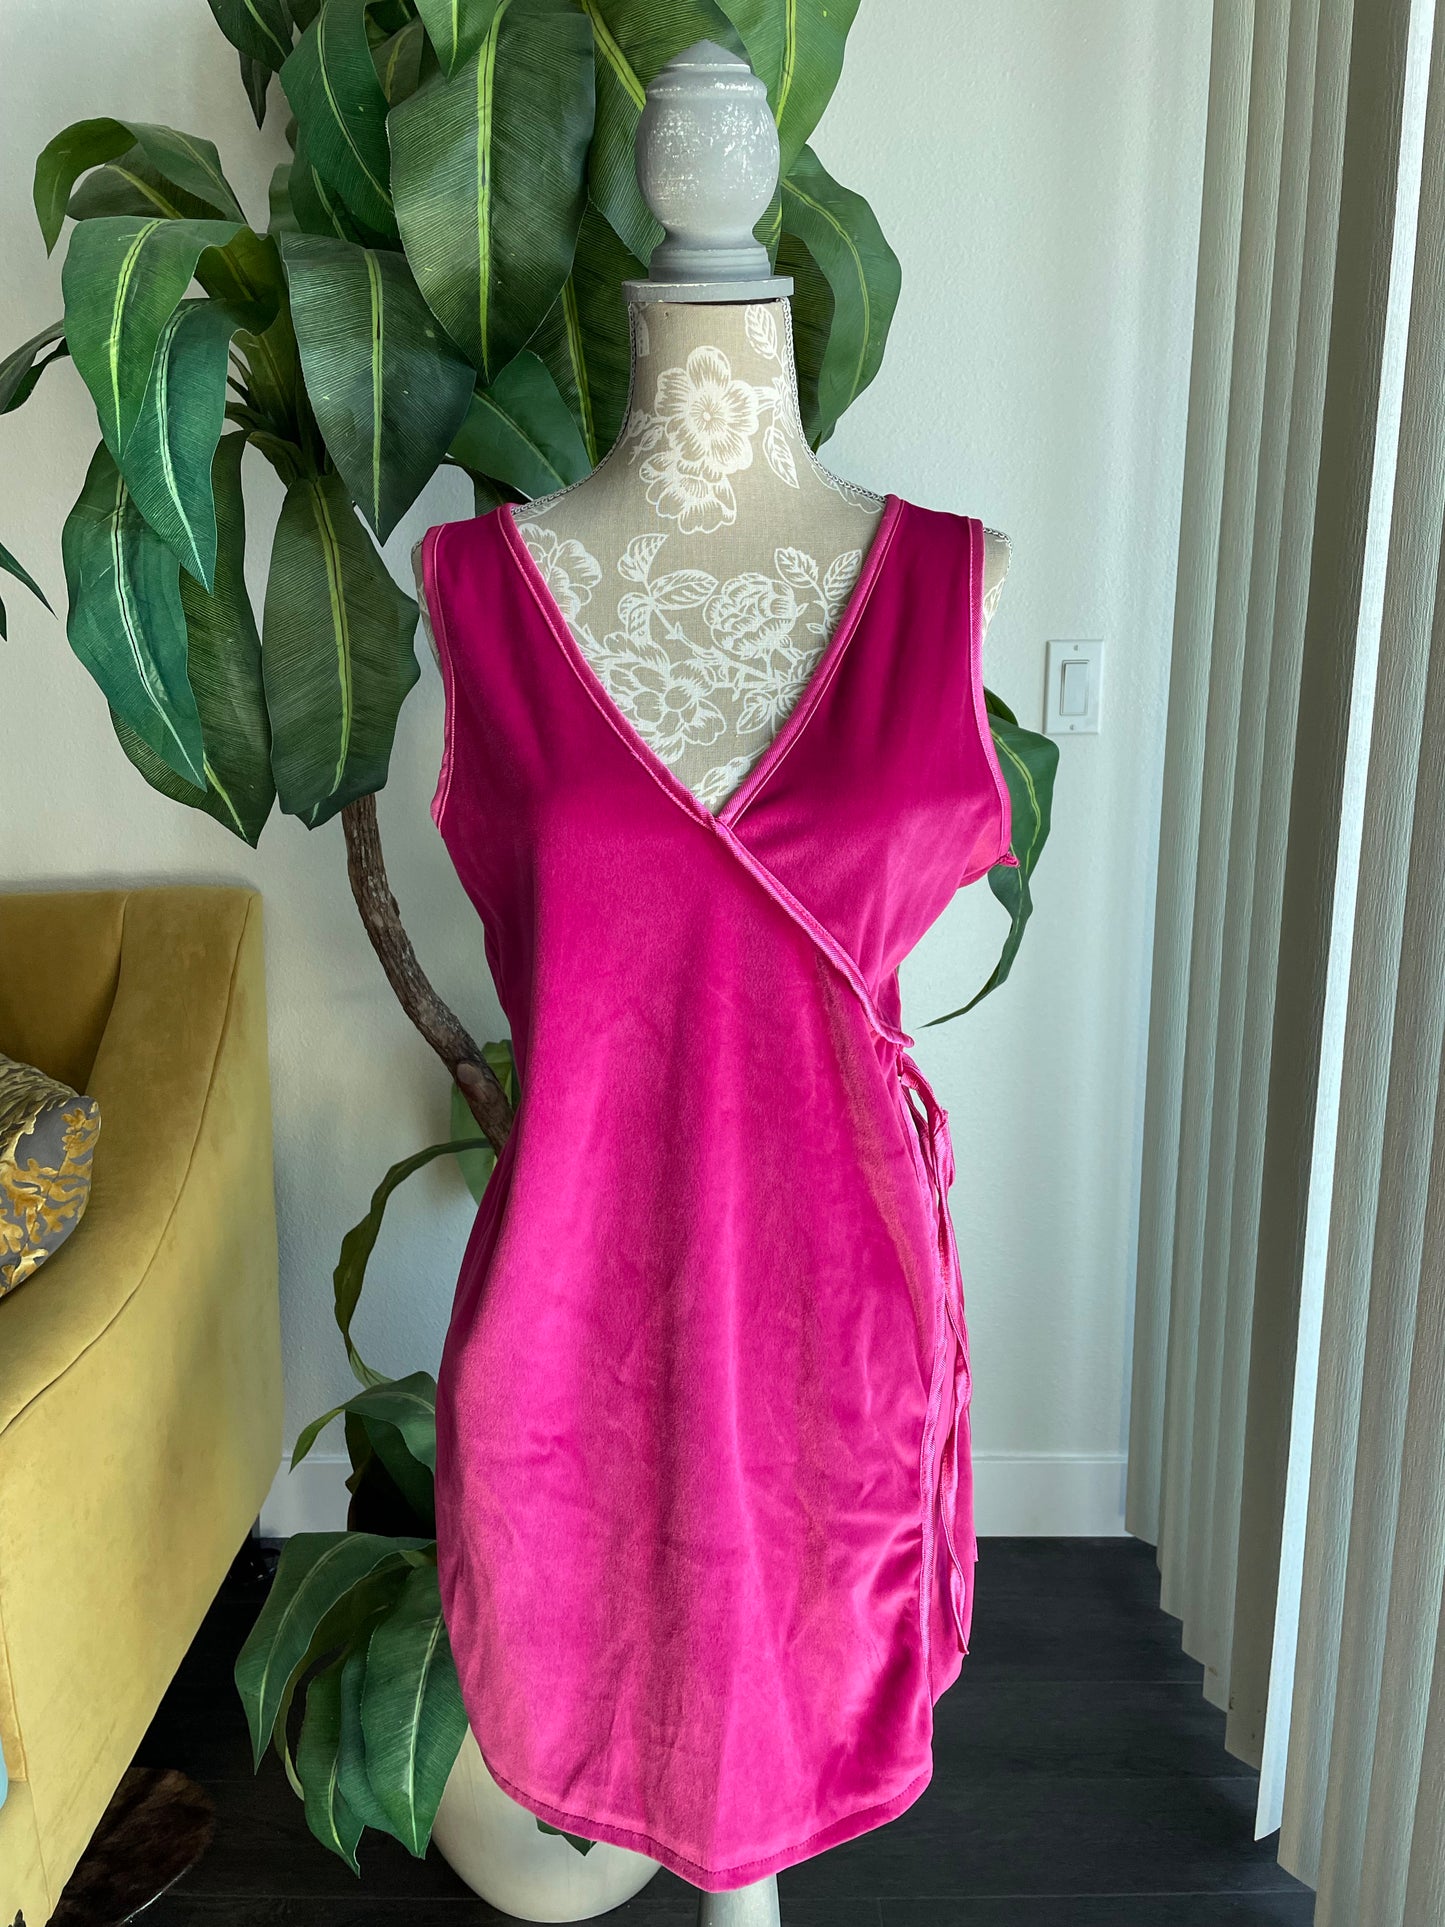 Daphne Blake hot pink velvet dress